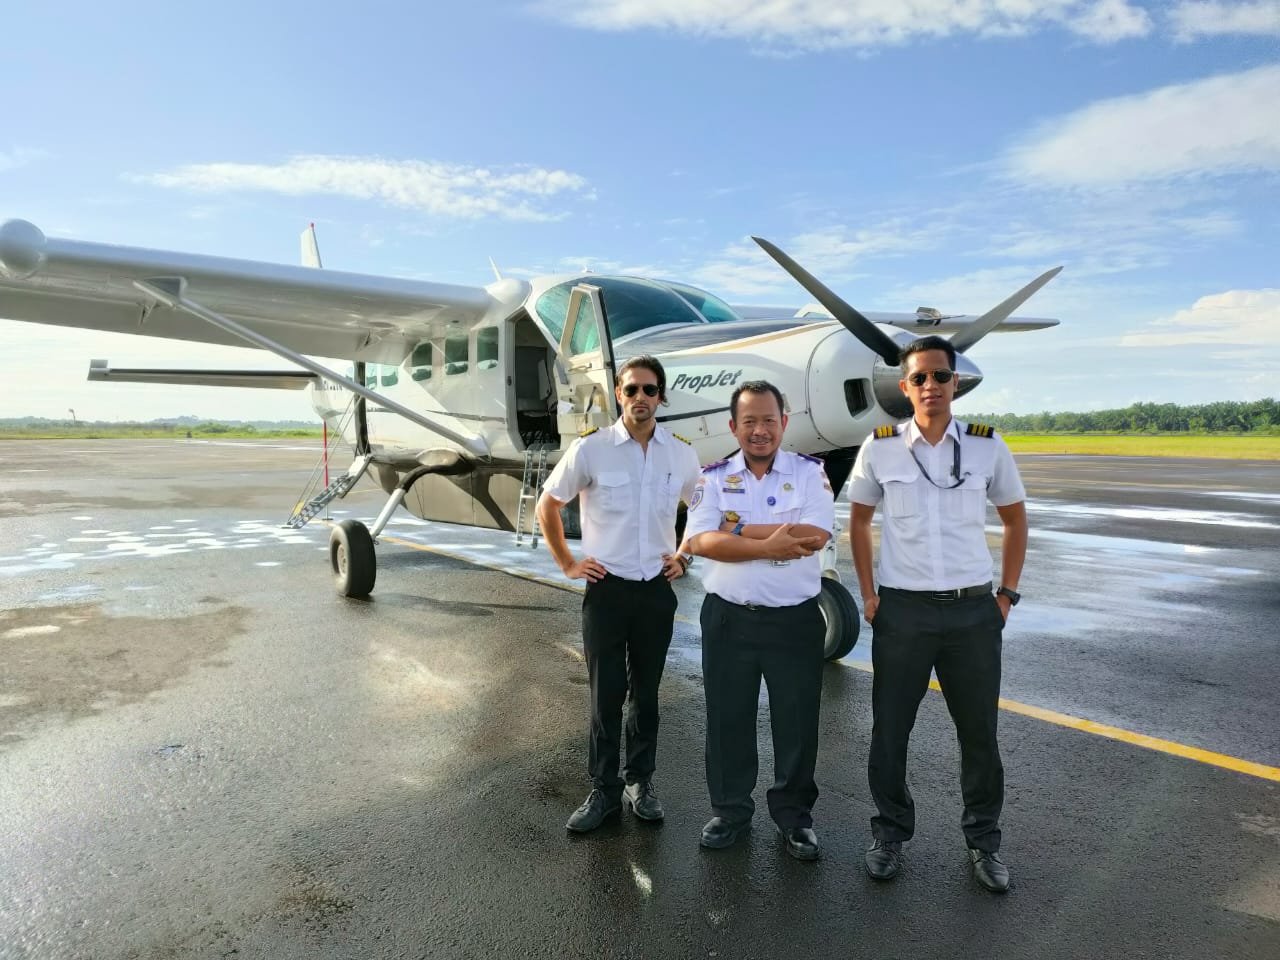 Penerbangan Perdana Angkutan Perintis, Susi Air Mendarat di Bandara Atung Bungsu Pagar Alam - Nusantara Info